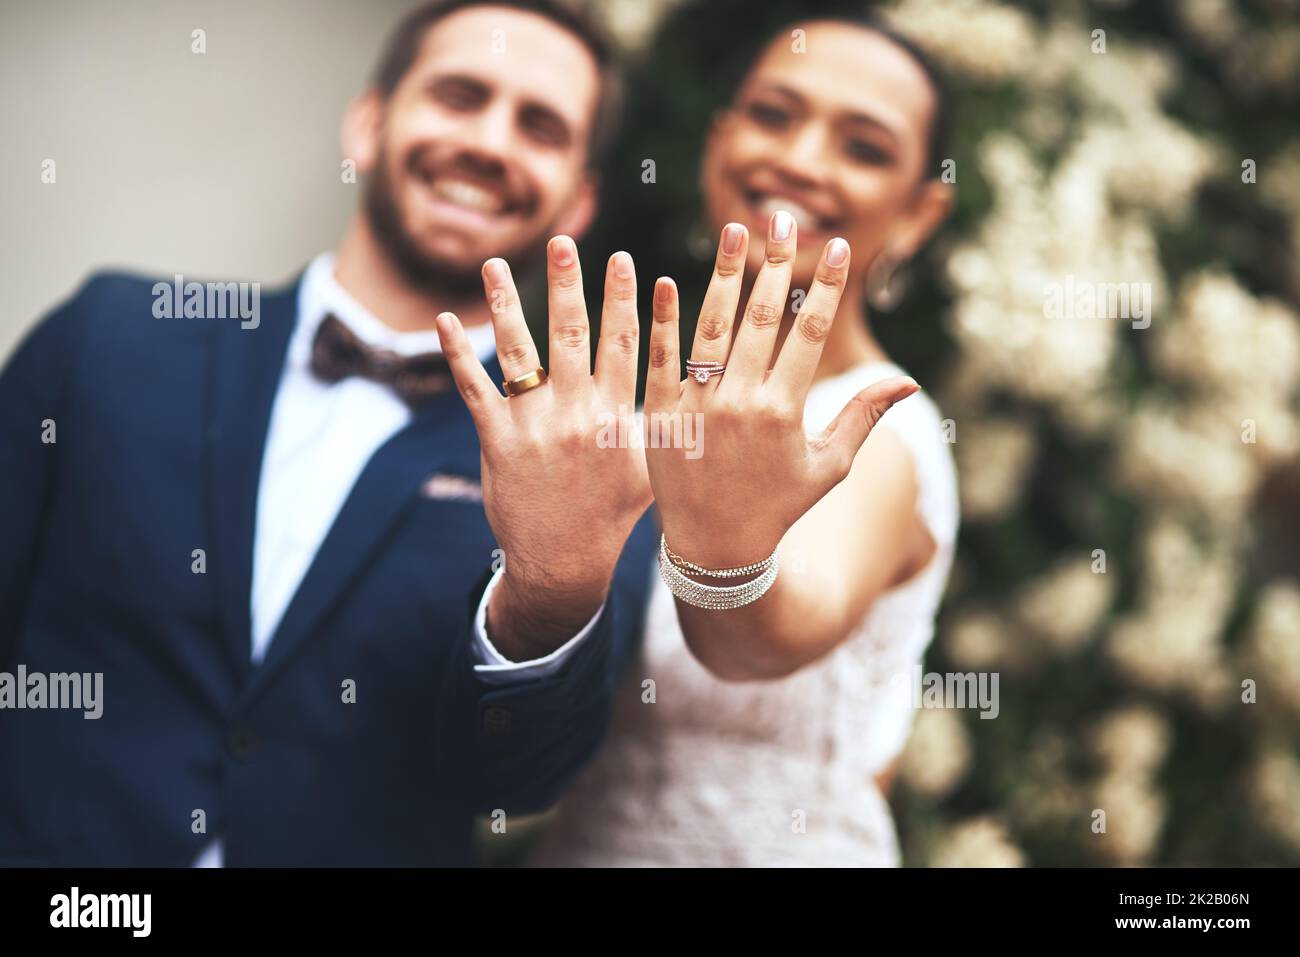 Unsere Symbole der Liebe aufblitzen lassen. Aufnahme eines glücklichen jungen Ehepaares, das am Hochzeitstag ihre Ringe zeigt. Stockfoto